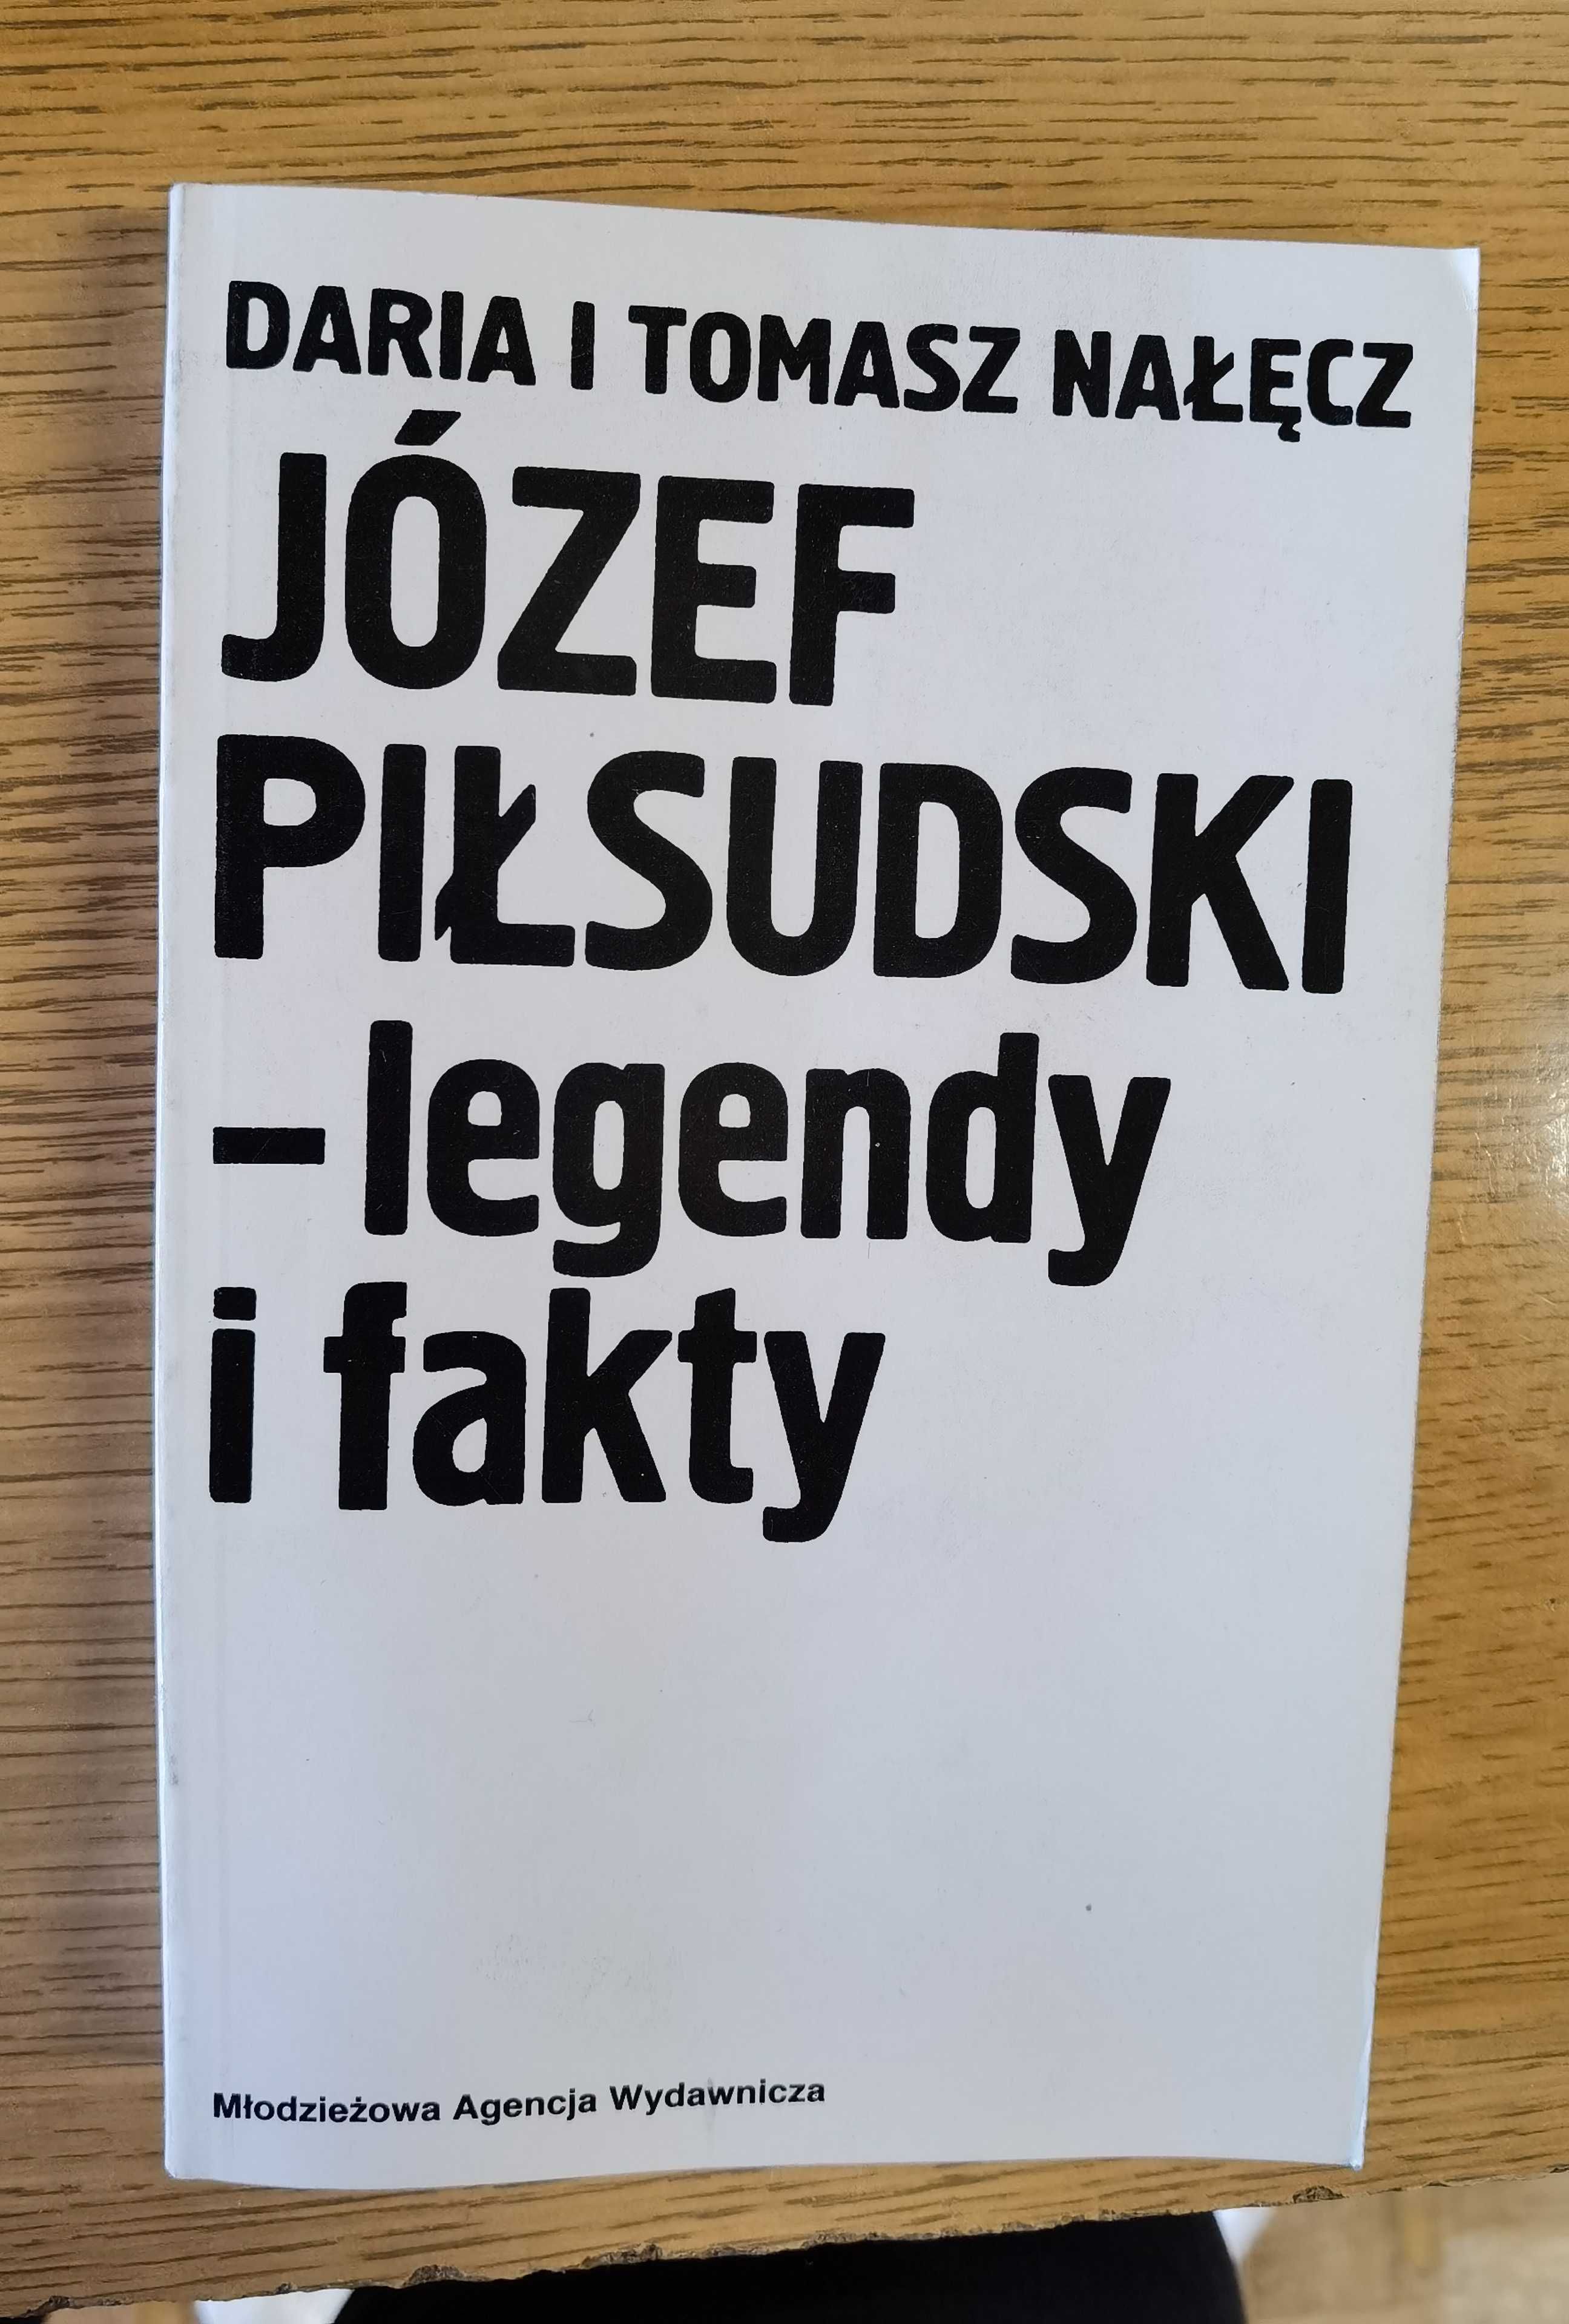 Daria i Tomasz Nałęcz JÓZEF PIŁSUDSKI - legendy i fakty, MAW 1986